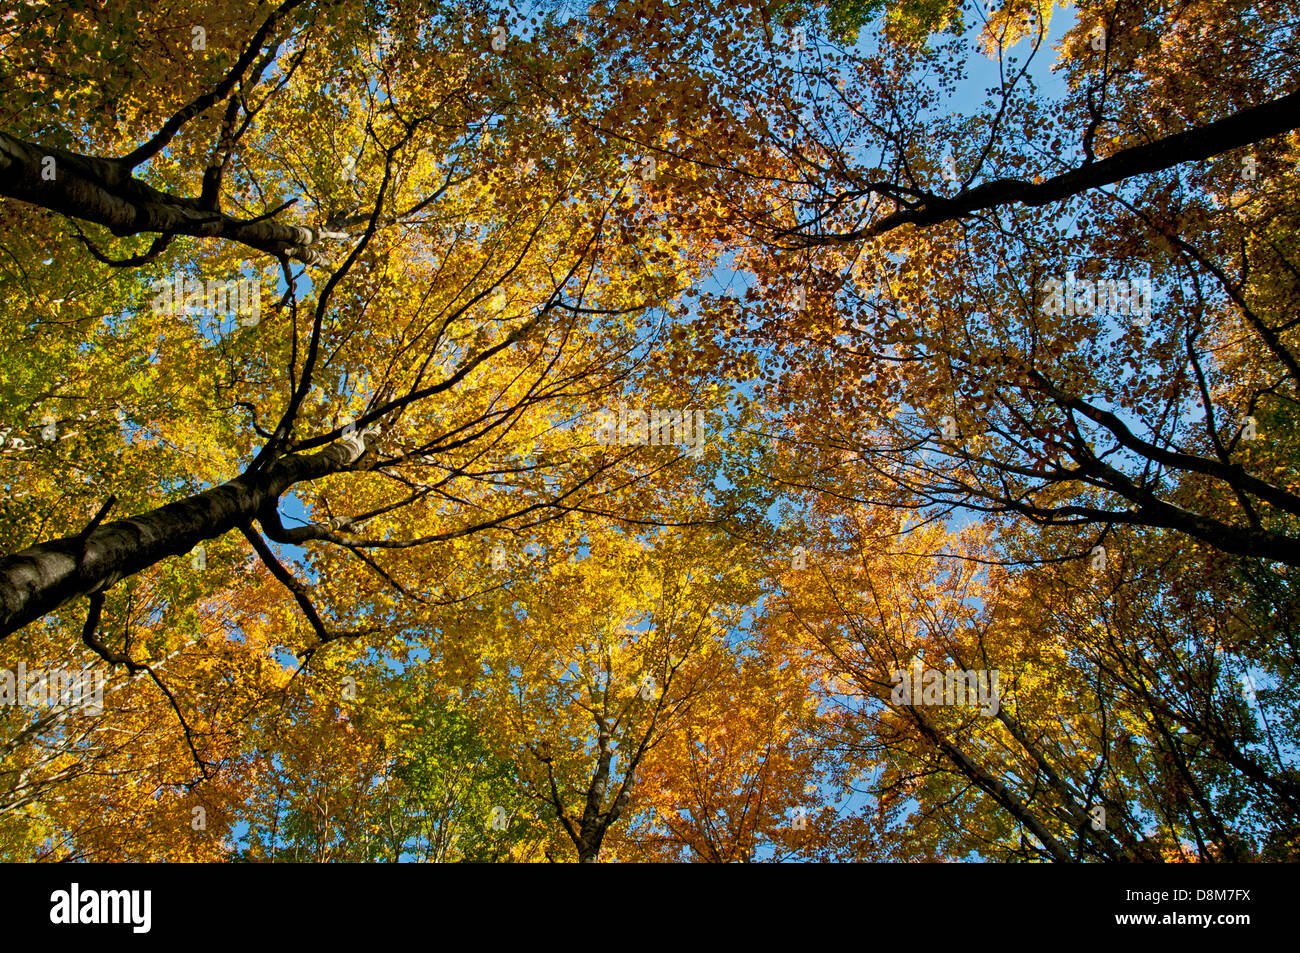 Forêts de hêtres avec feuillage en couleurs d'automne en automne Banque D'Images